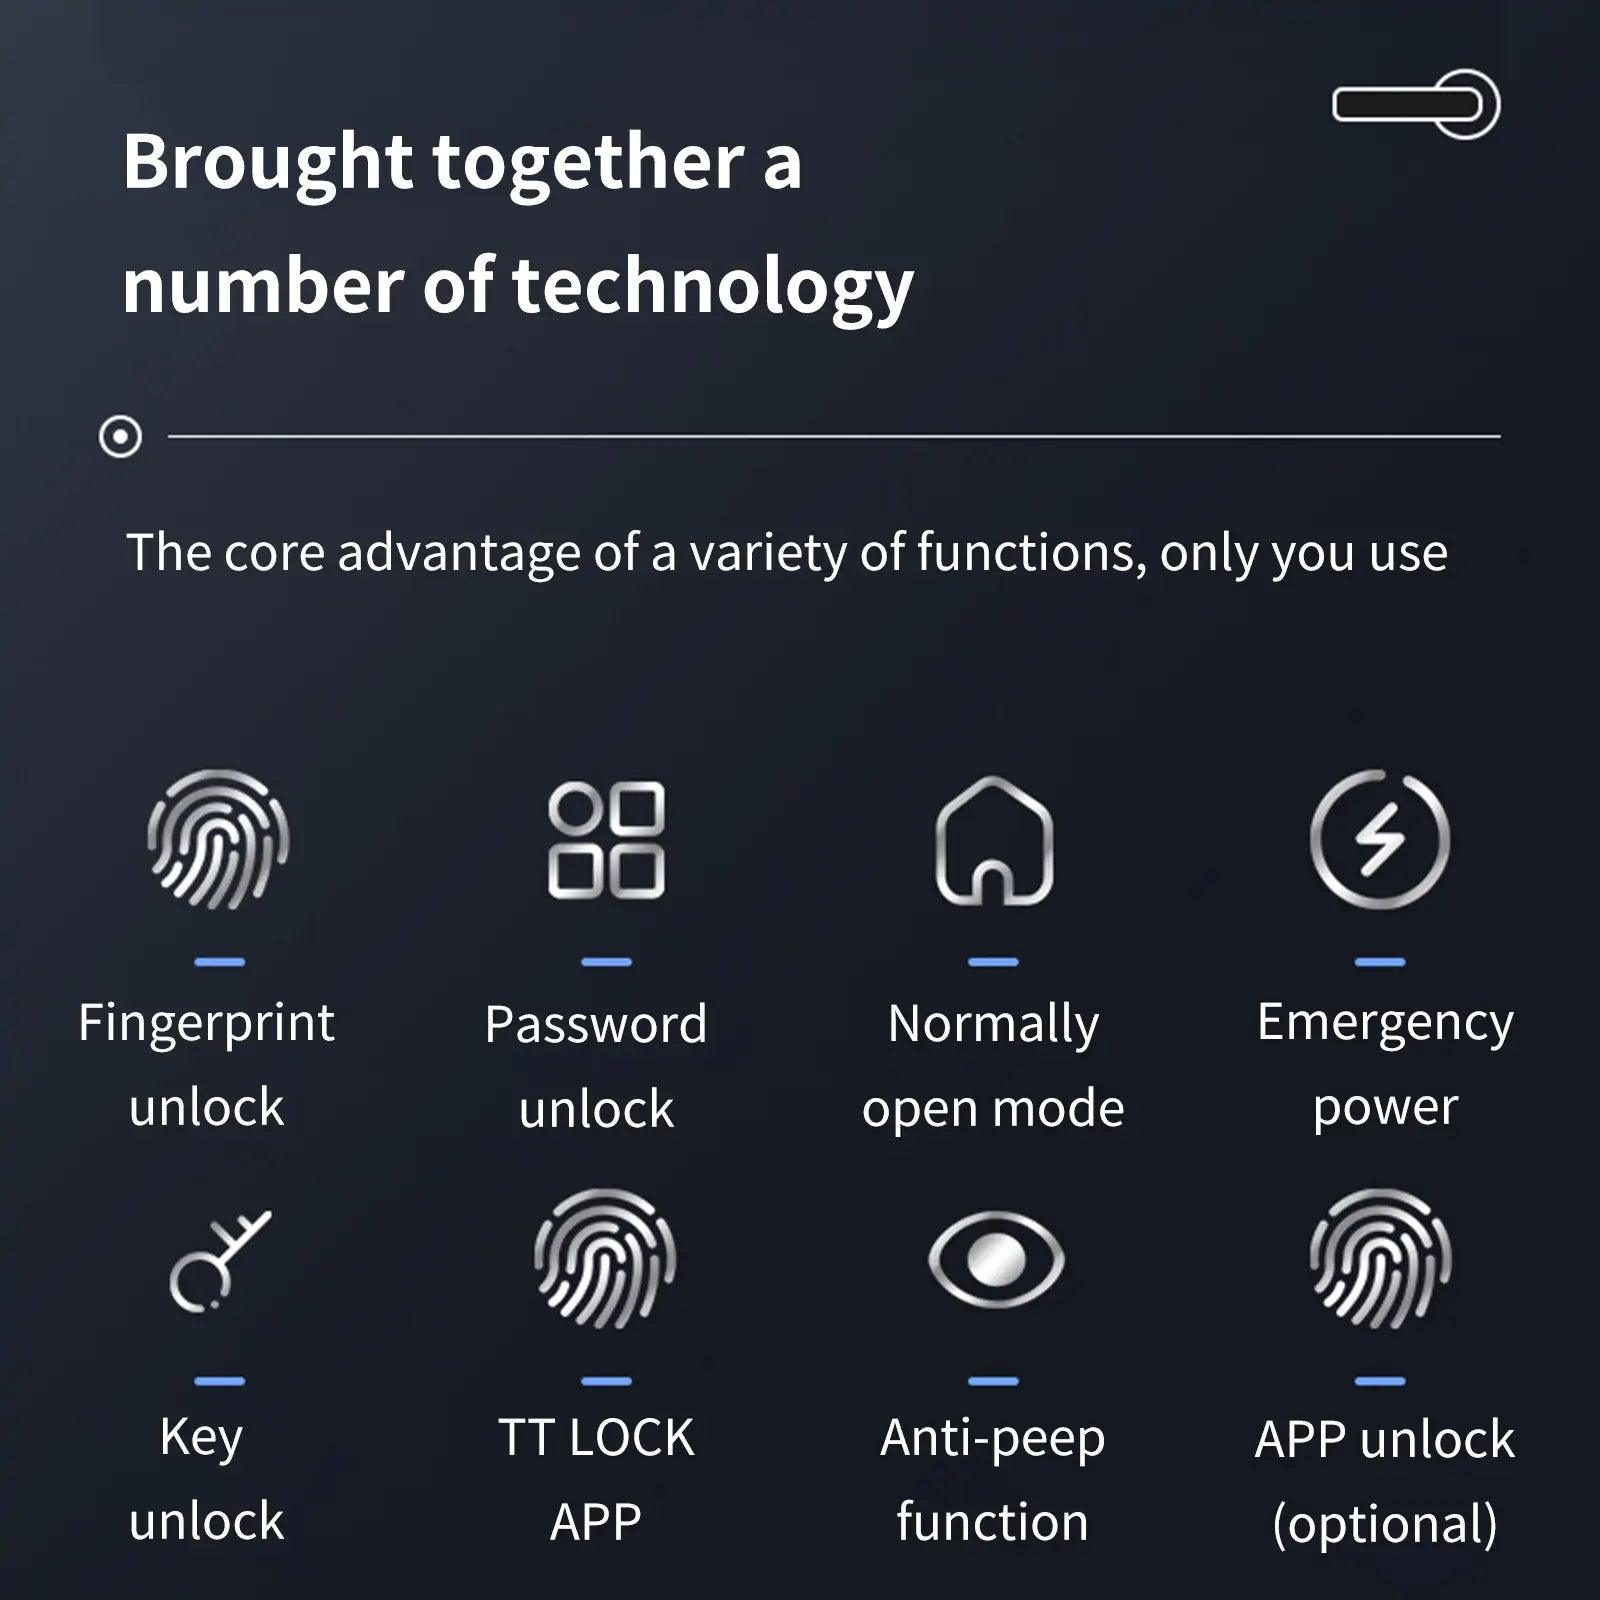 Smart Fingerprint Door Lock - BelleHarris